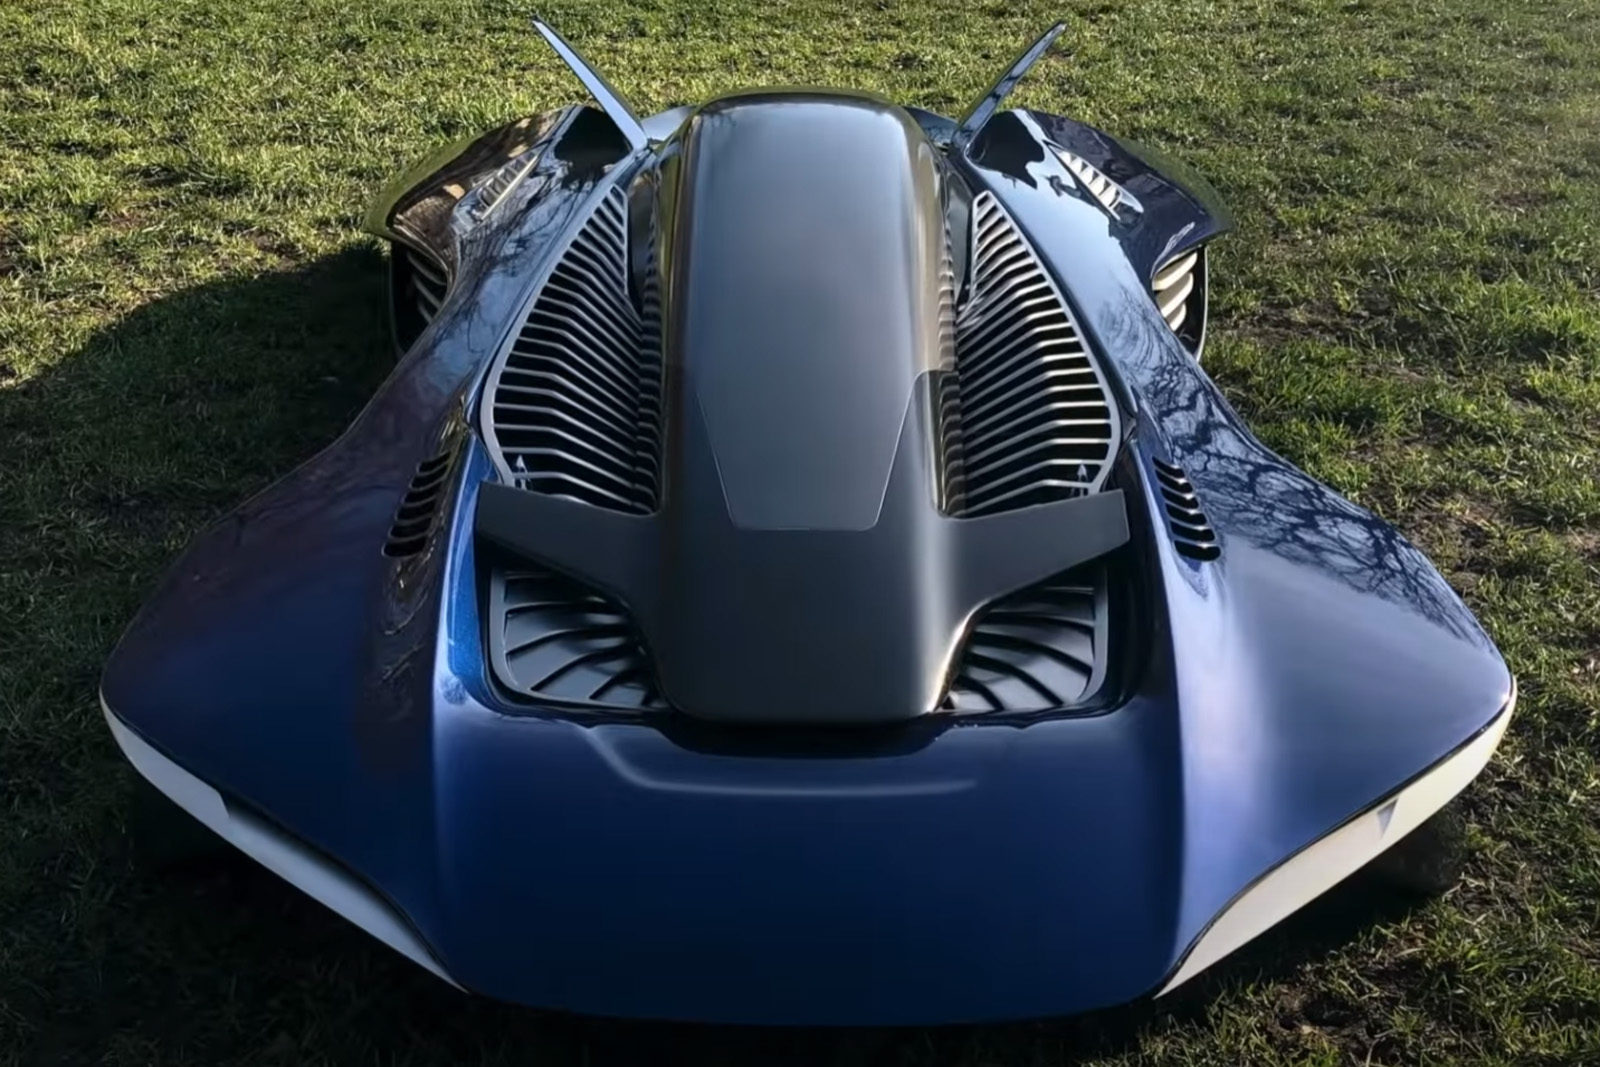 スーパーカー的デザインのeVTOL試作機、飛行試験に成功。2028年市場投入を目指す